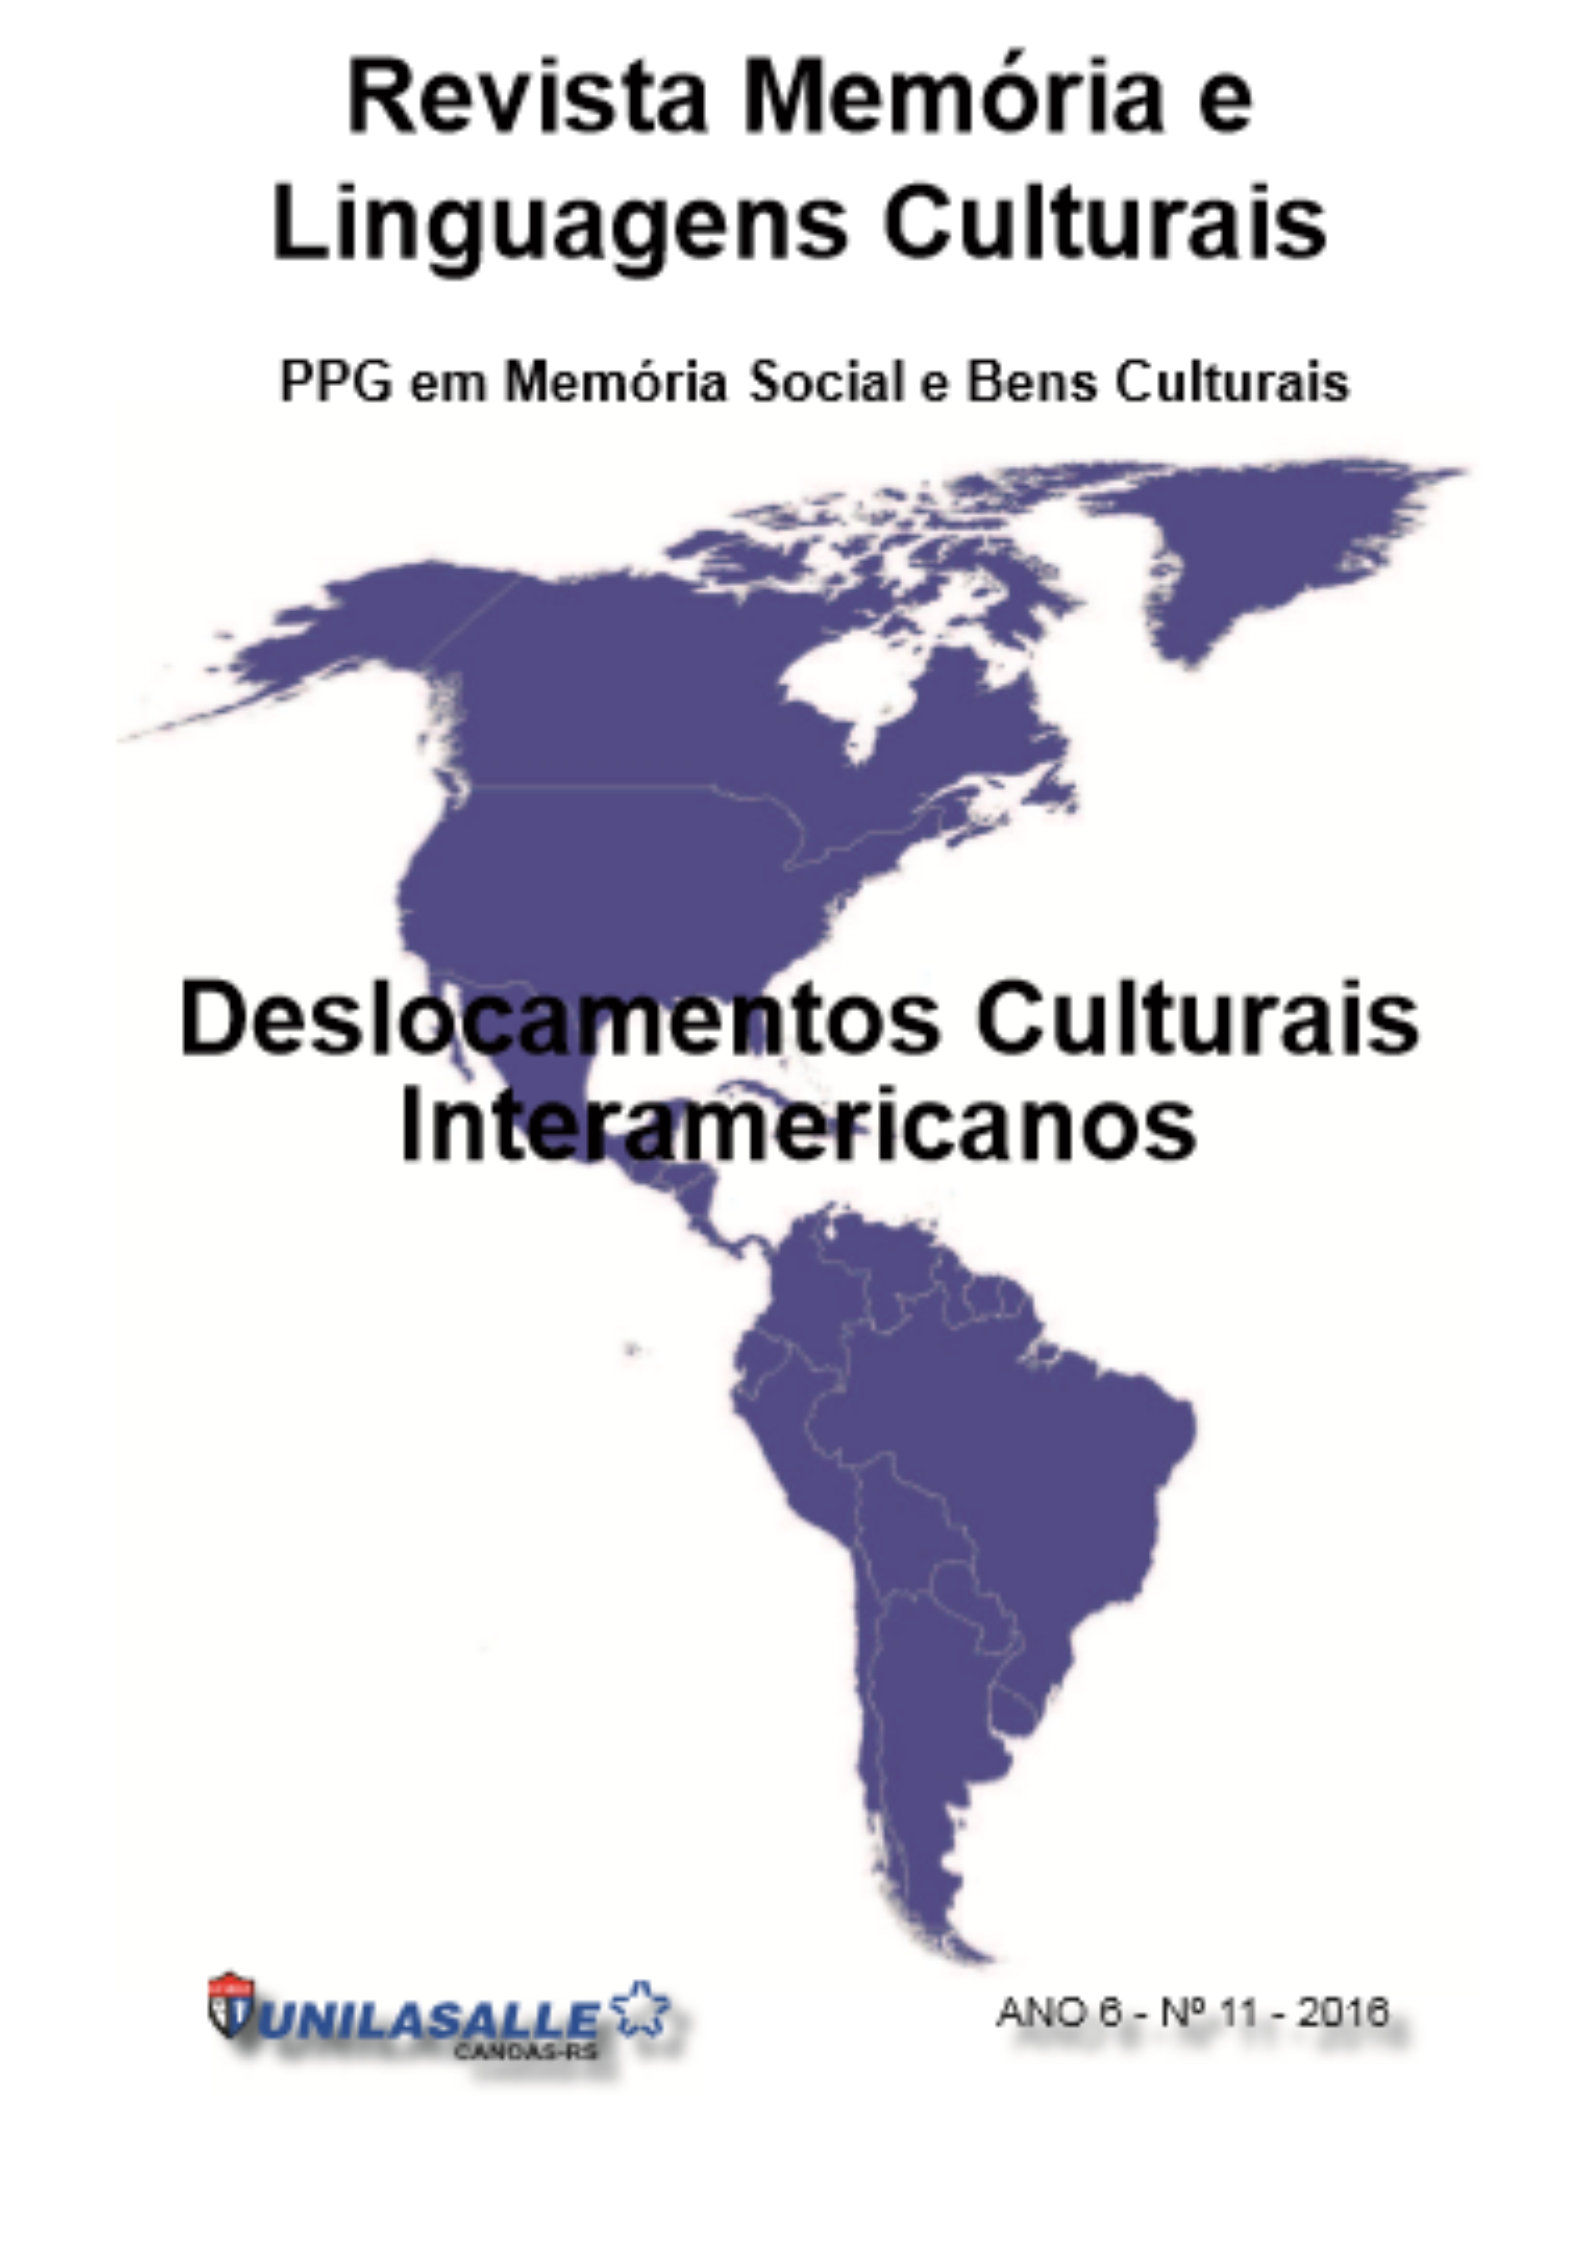 Revista Memória e Linguagens Culturais: Deslocamentos Culturais Interamericanos